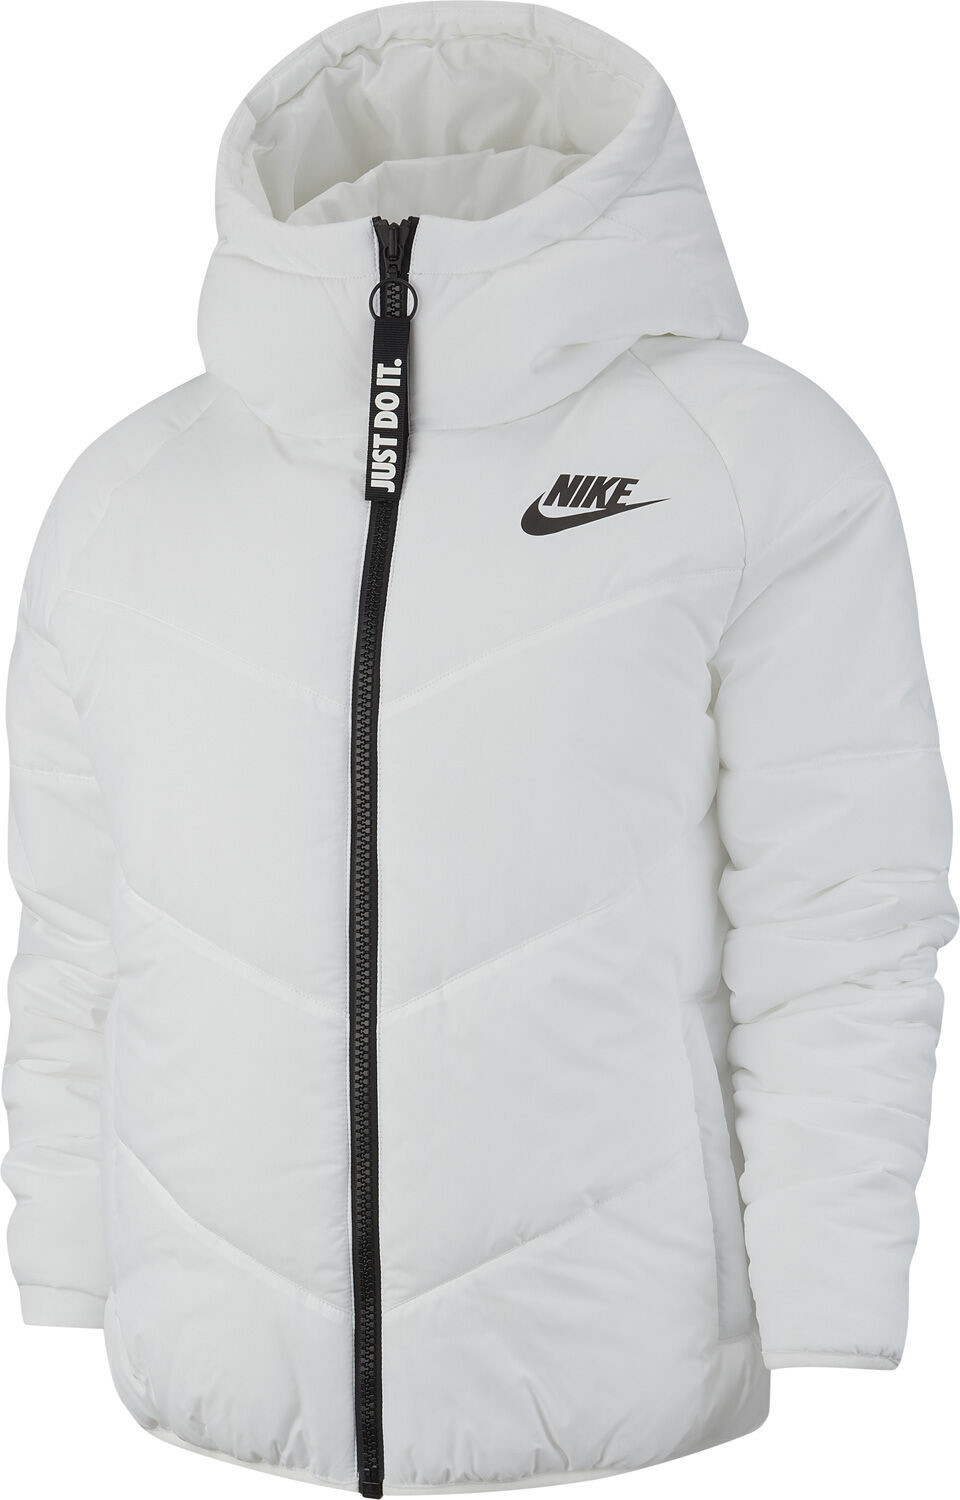 Nike Windrunner Jacket Women white (BV2906)